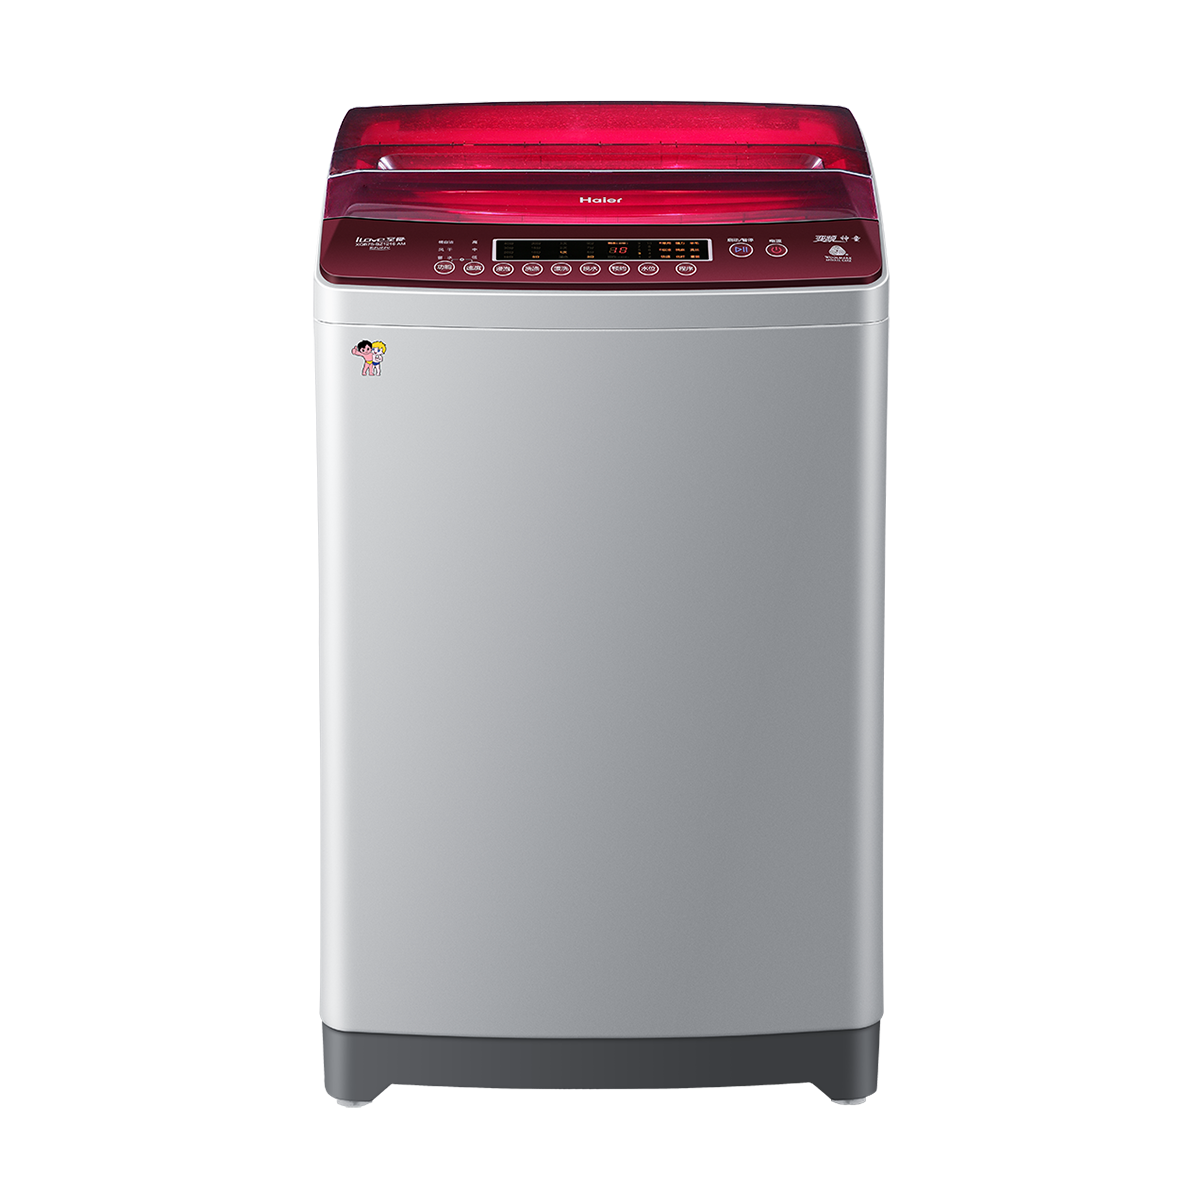 海尔Haier洗衣机 XQB75-BZ1216(AM) 说明书